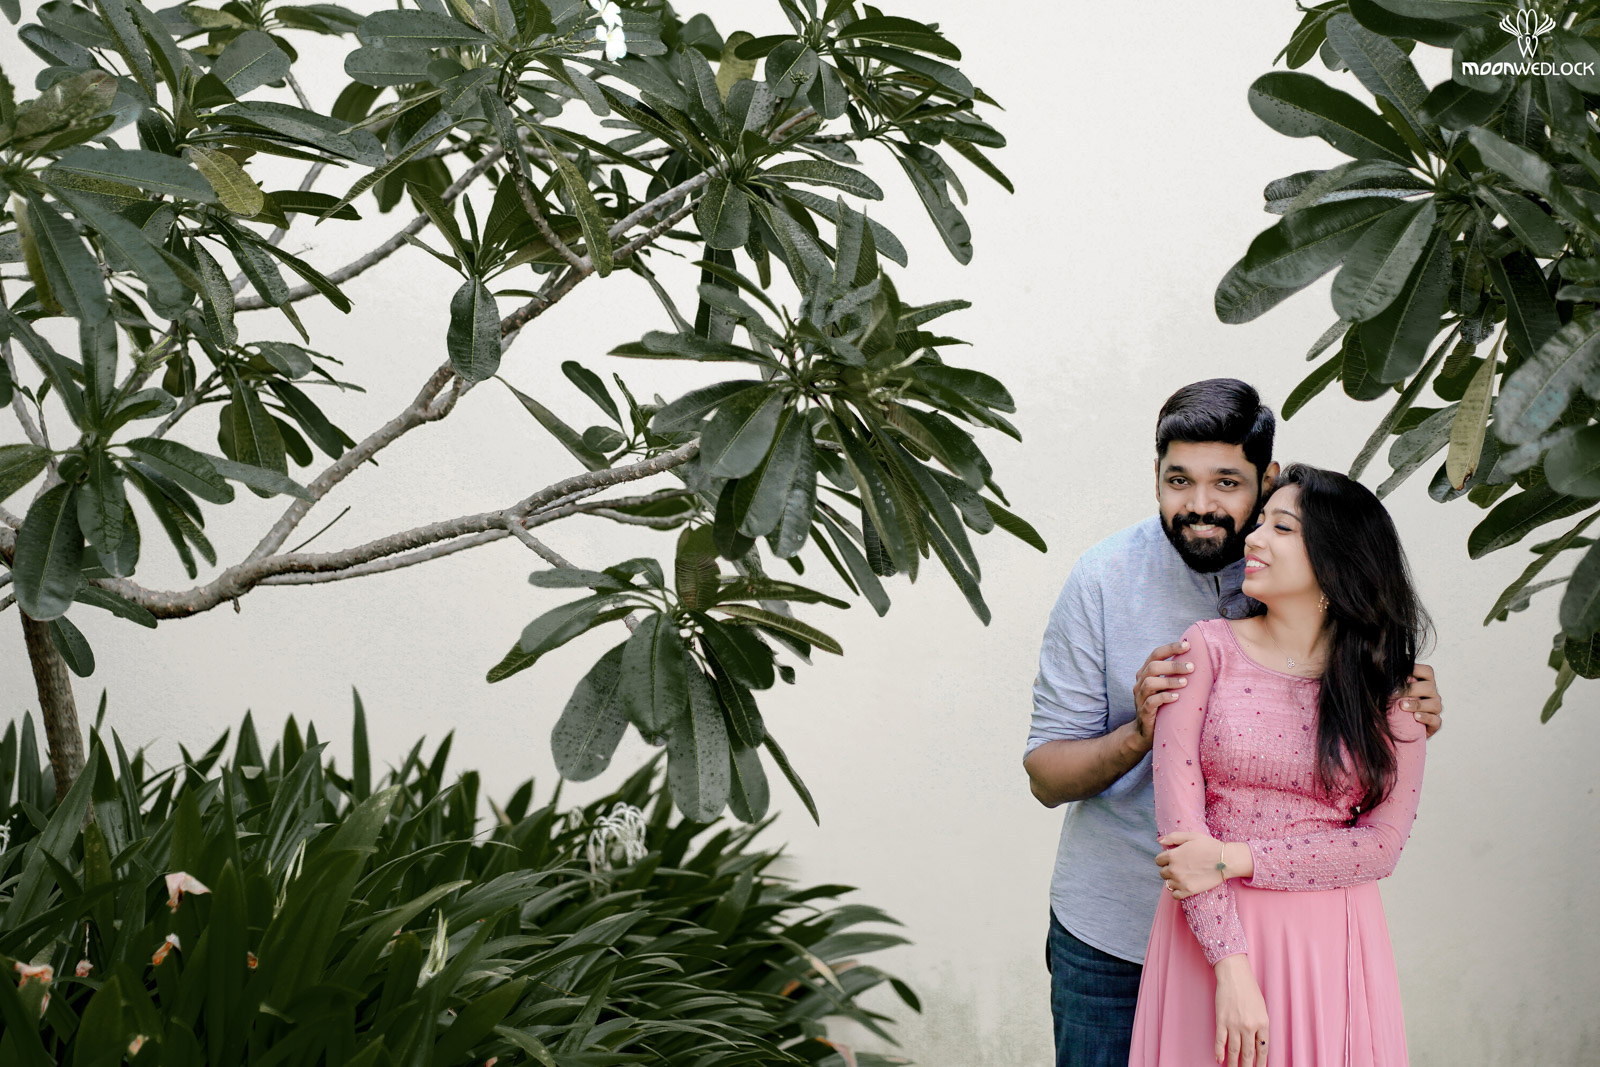 wedding-photographers-in-bangalore -moonwedlock (43)